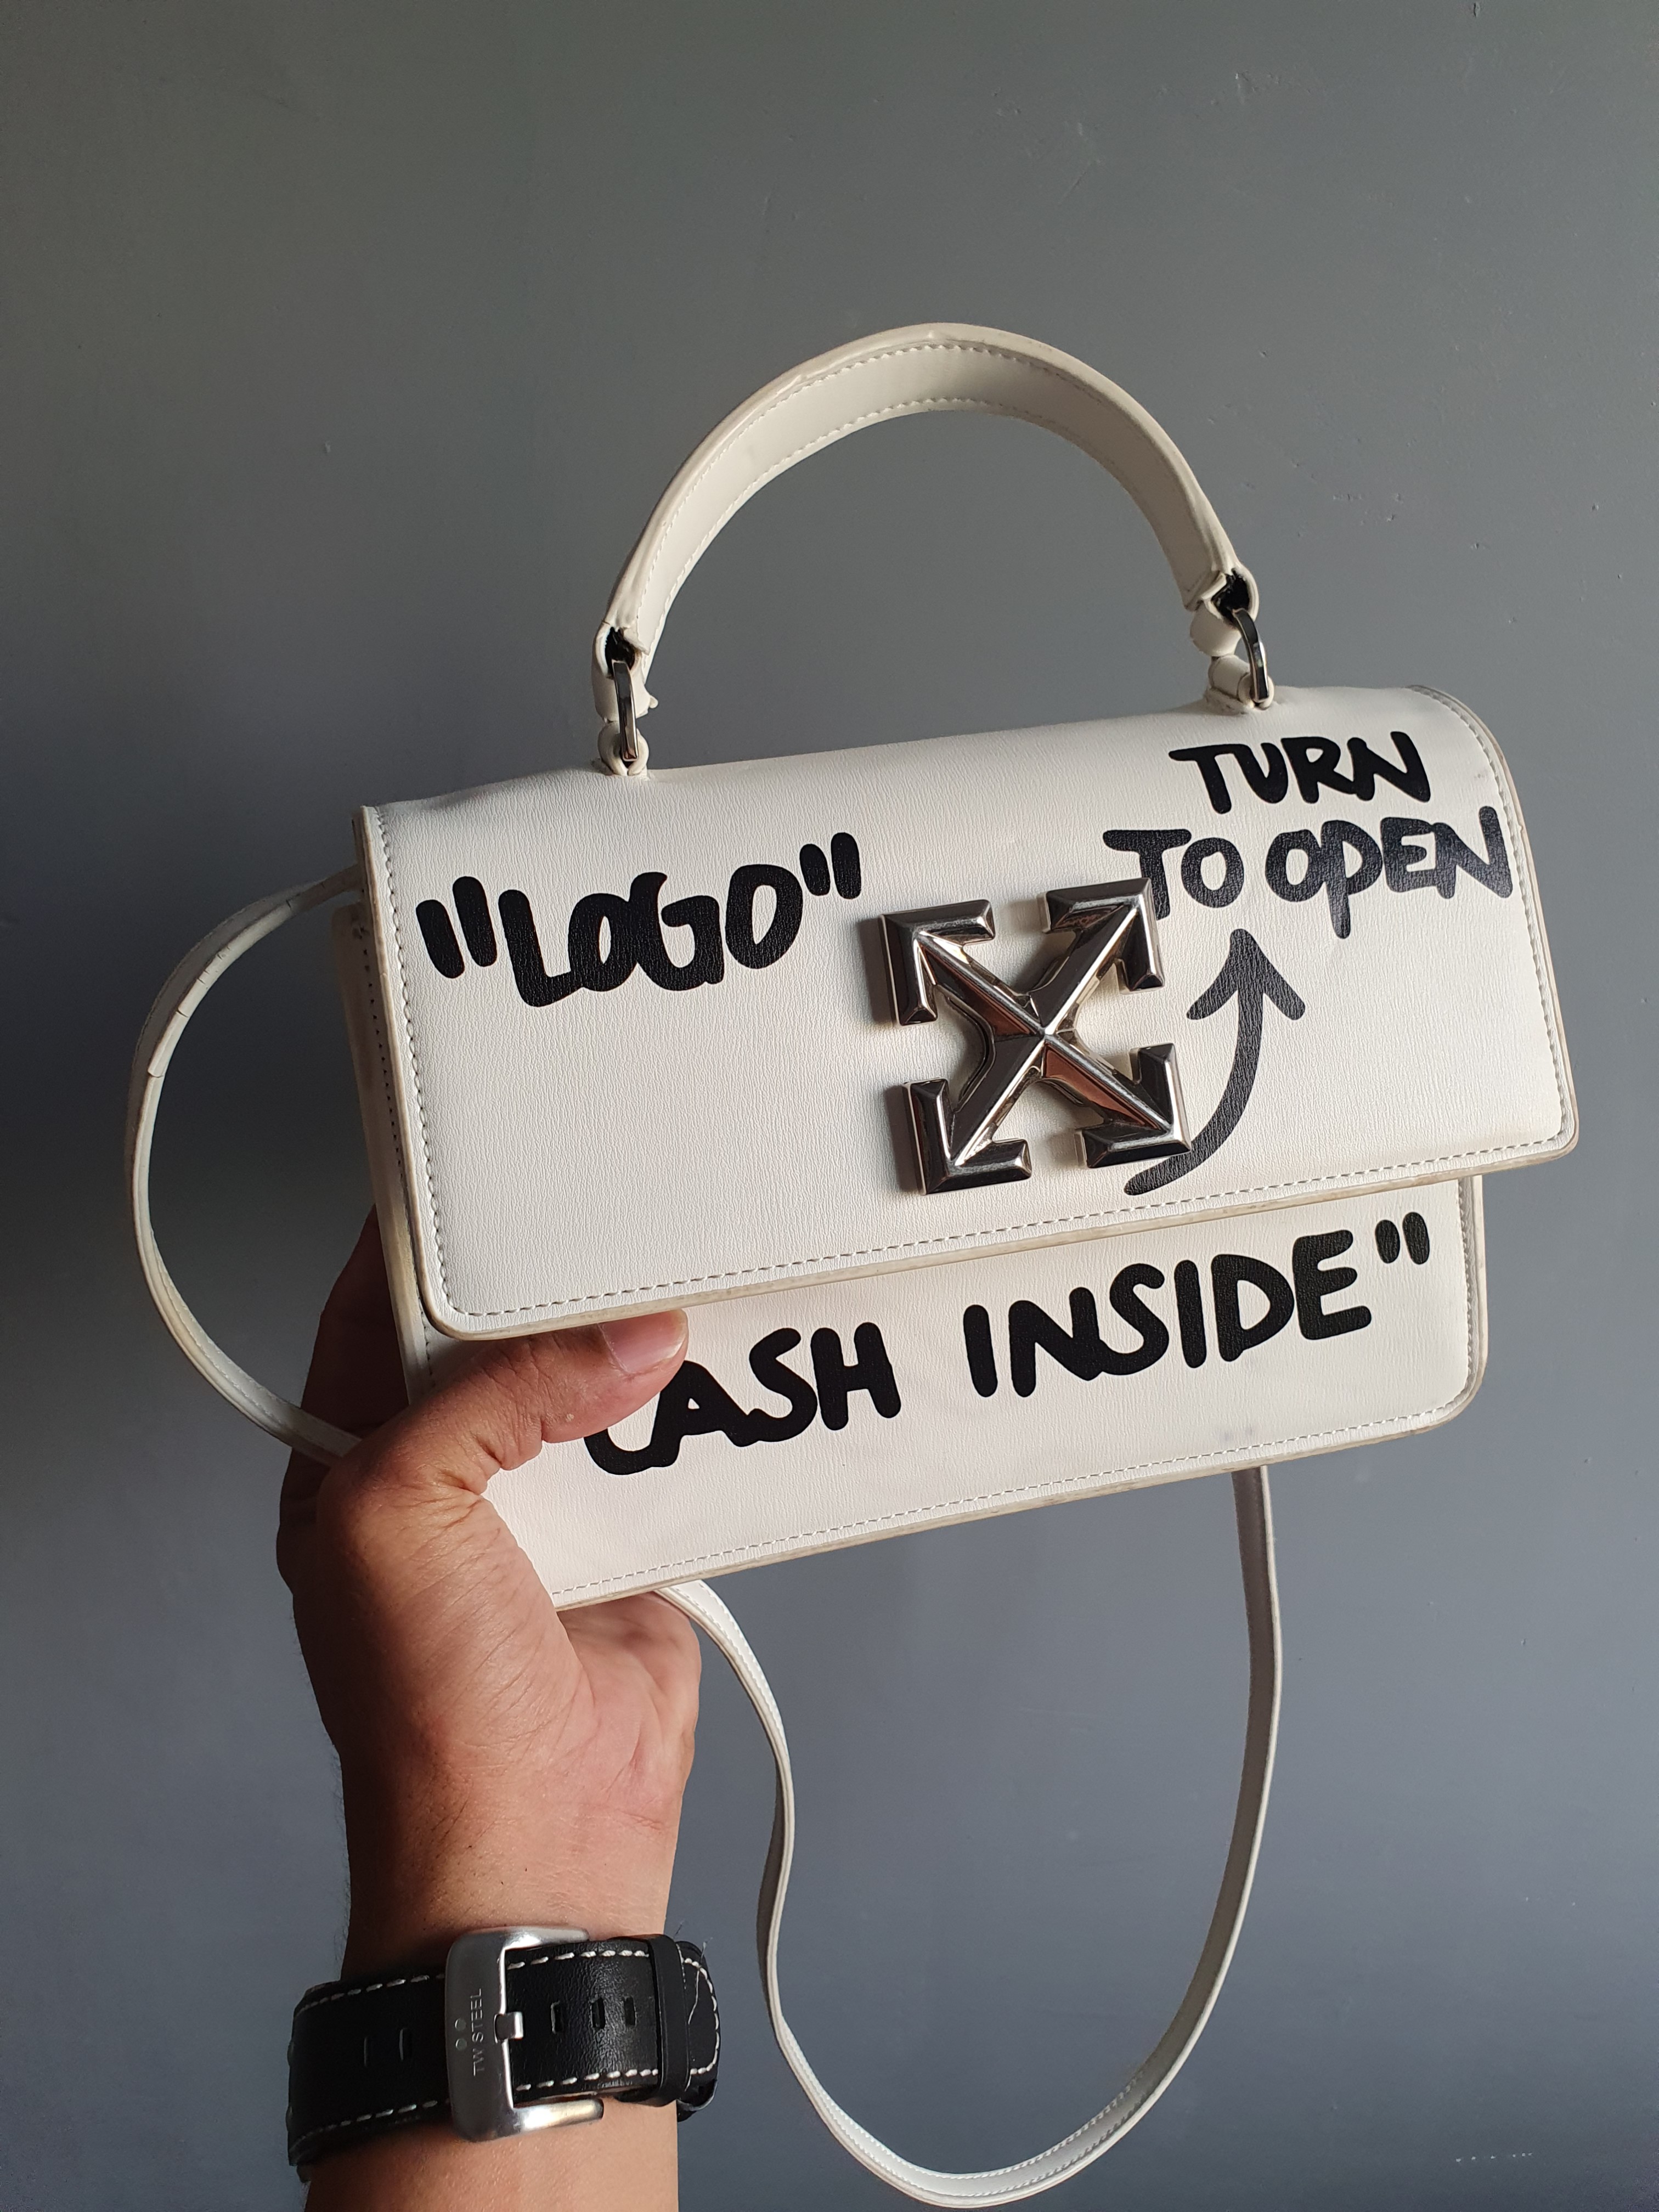 cash inside bag